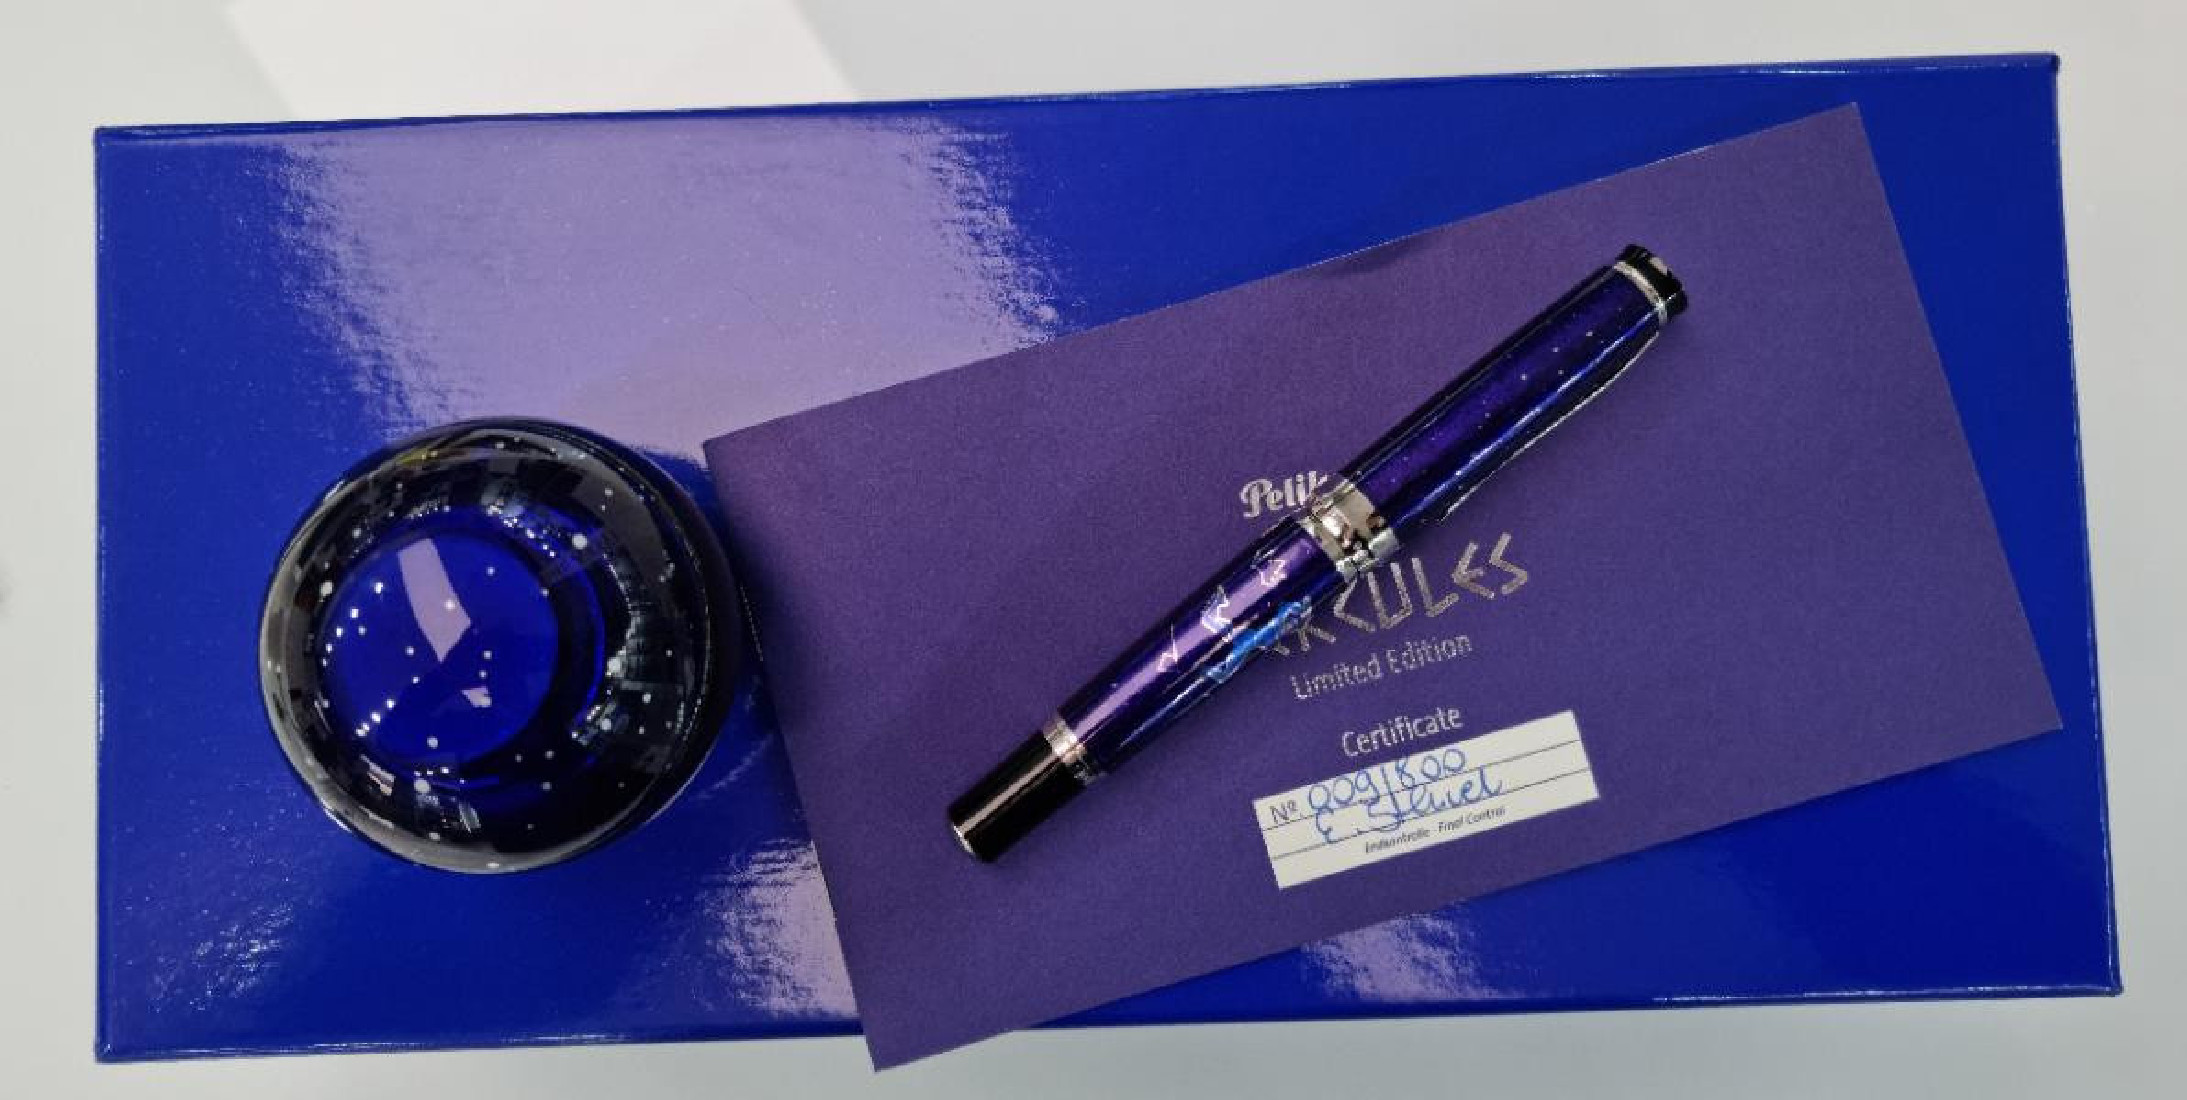 Pelikan Souveran M1000 Hercules Limited Edition fountain pen